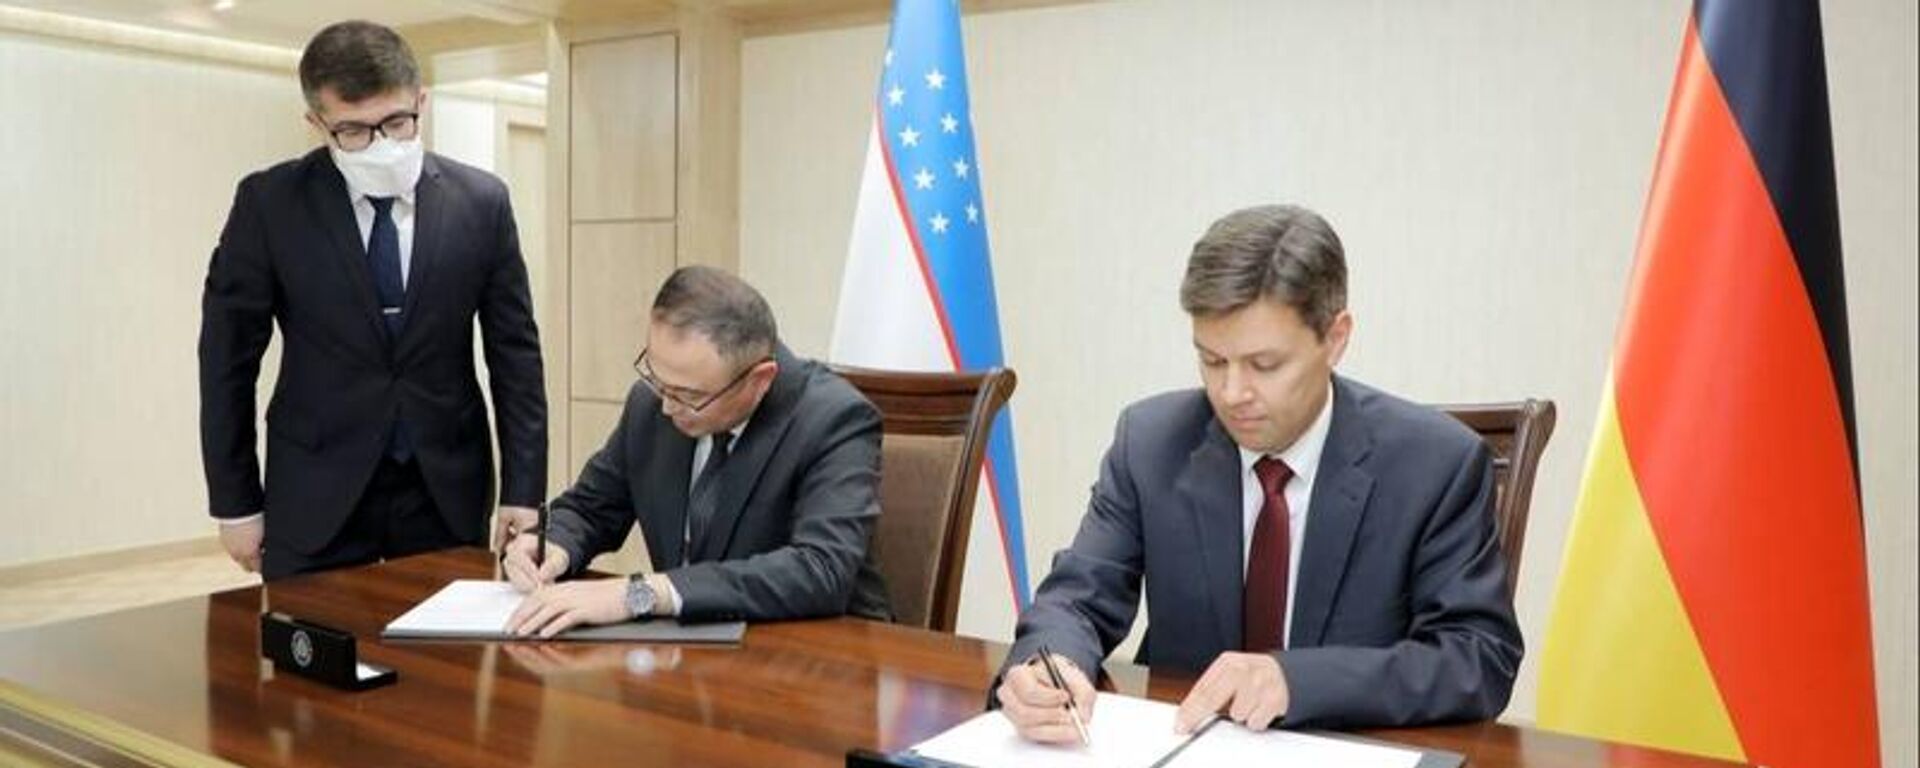 Церемония подписания соглашения о сотрудничестве между МВД РУз и ГИЦ - Sputnik Узбекистан, 1920, 30.03.2021